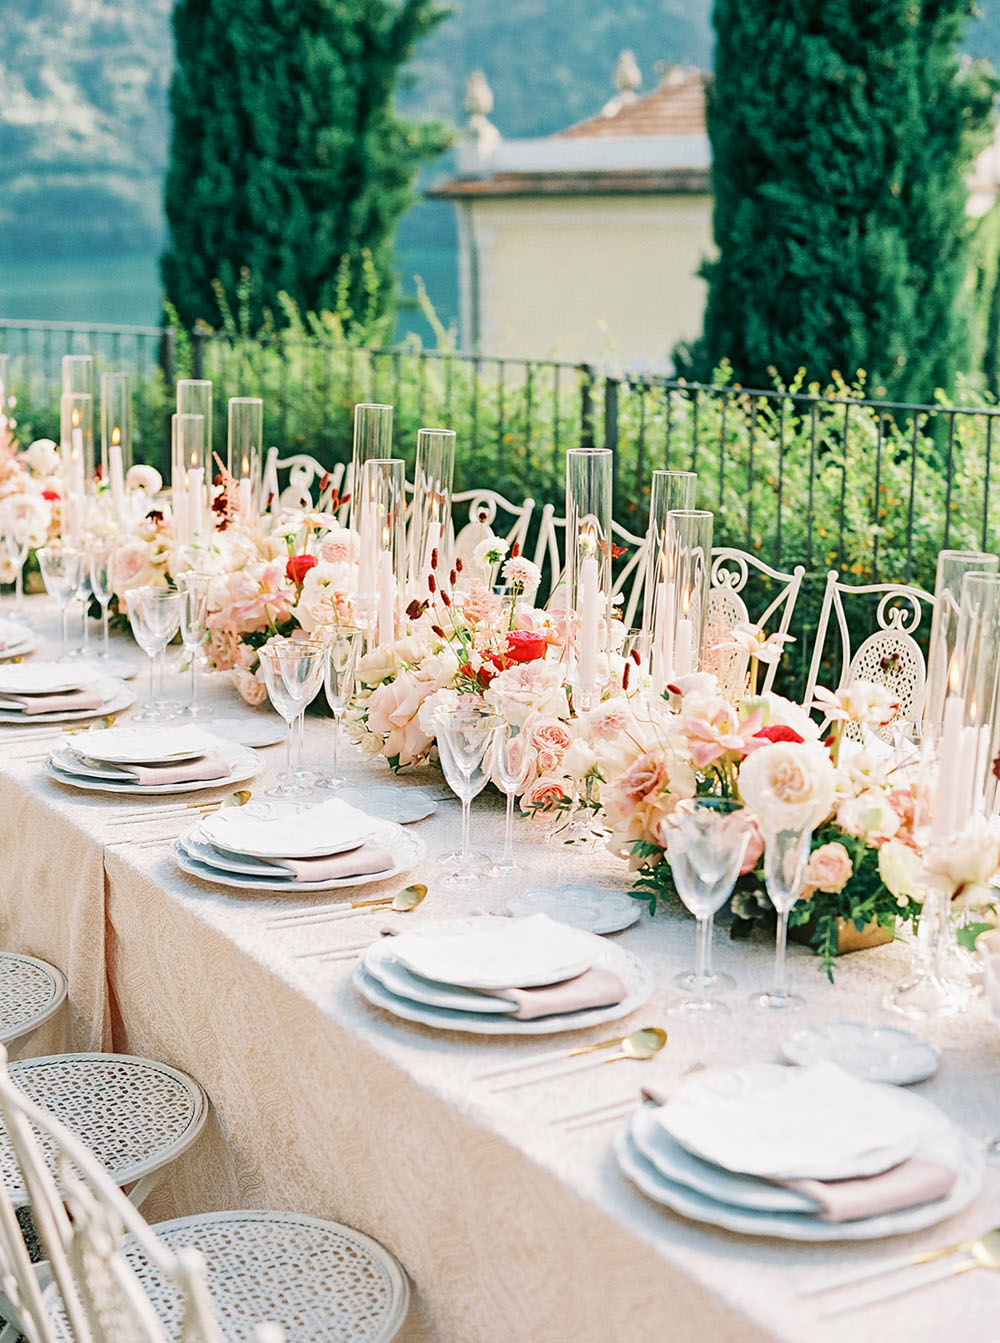 Italian tablescape for Lake Como villa wedding